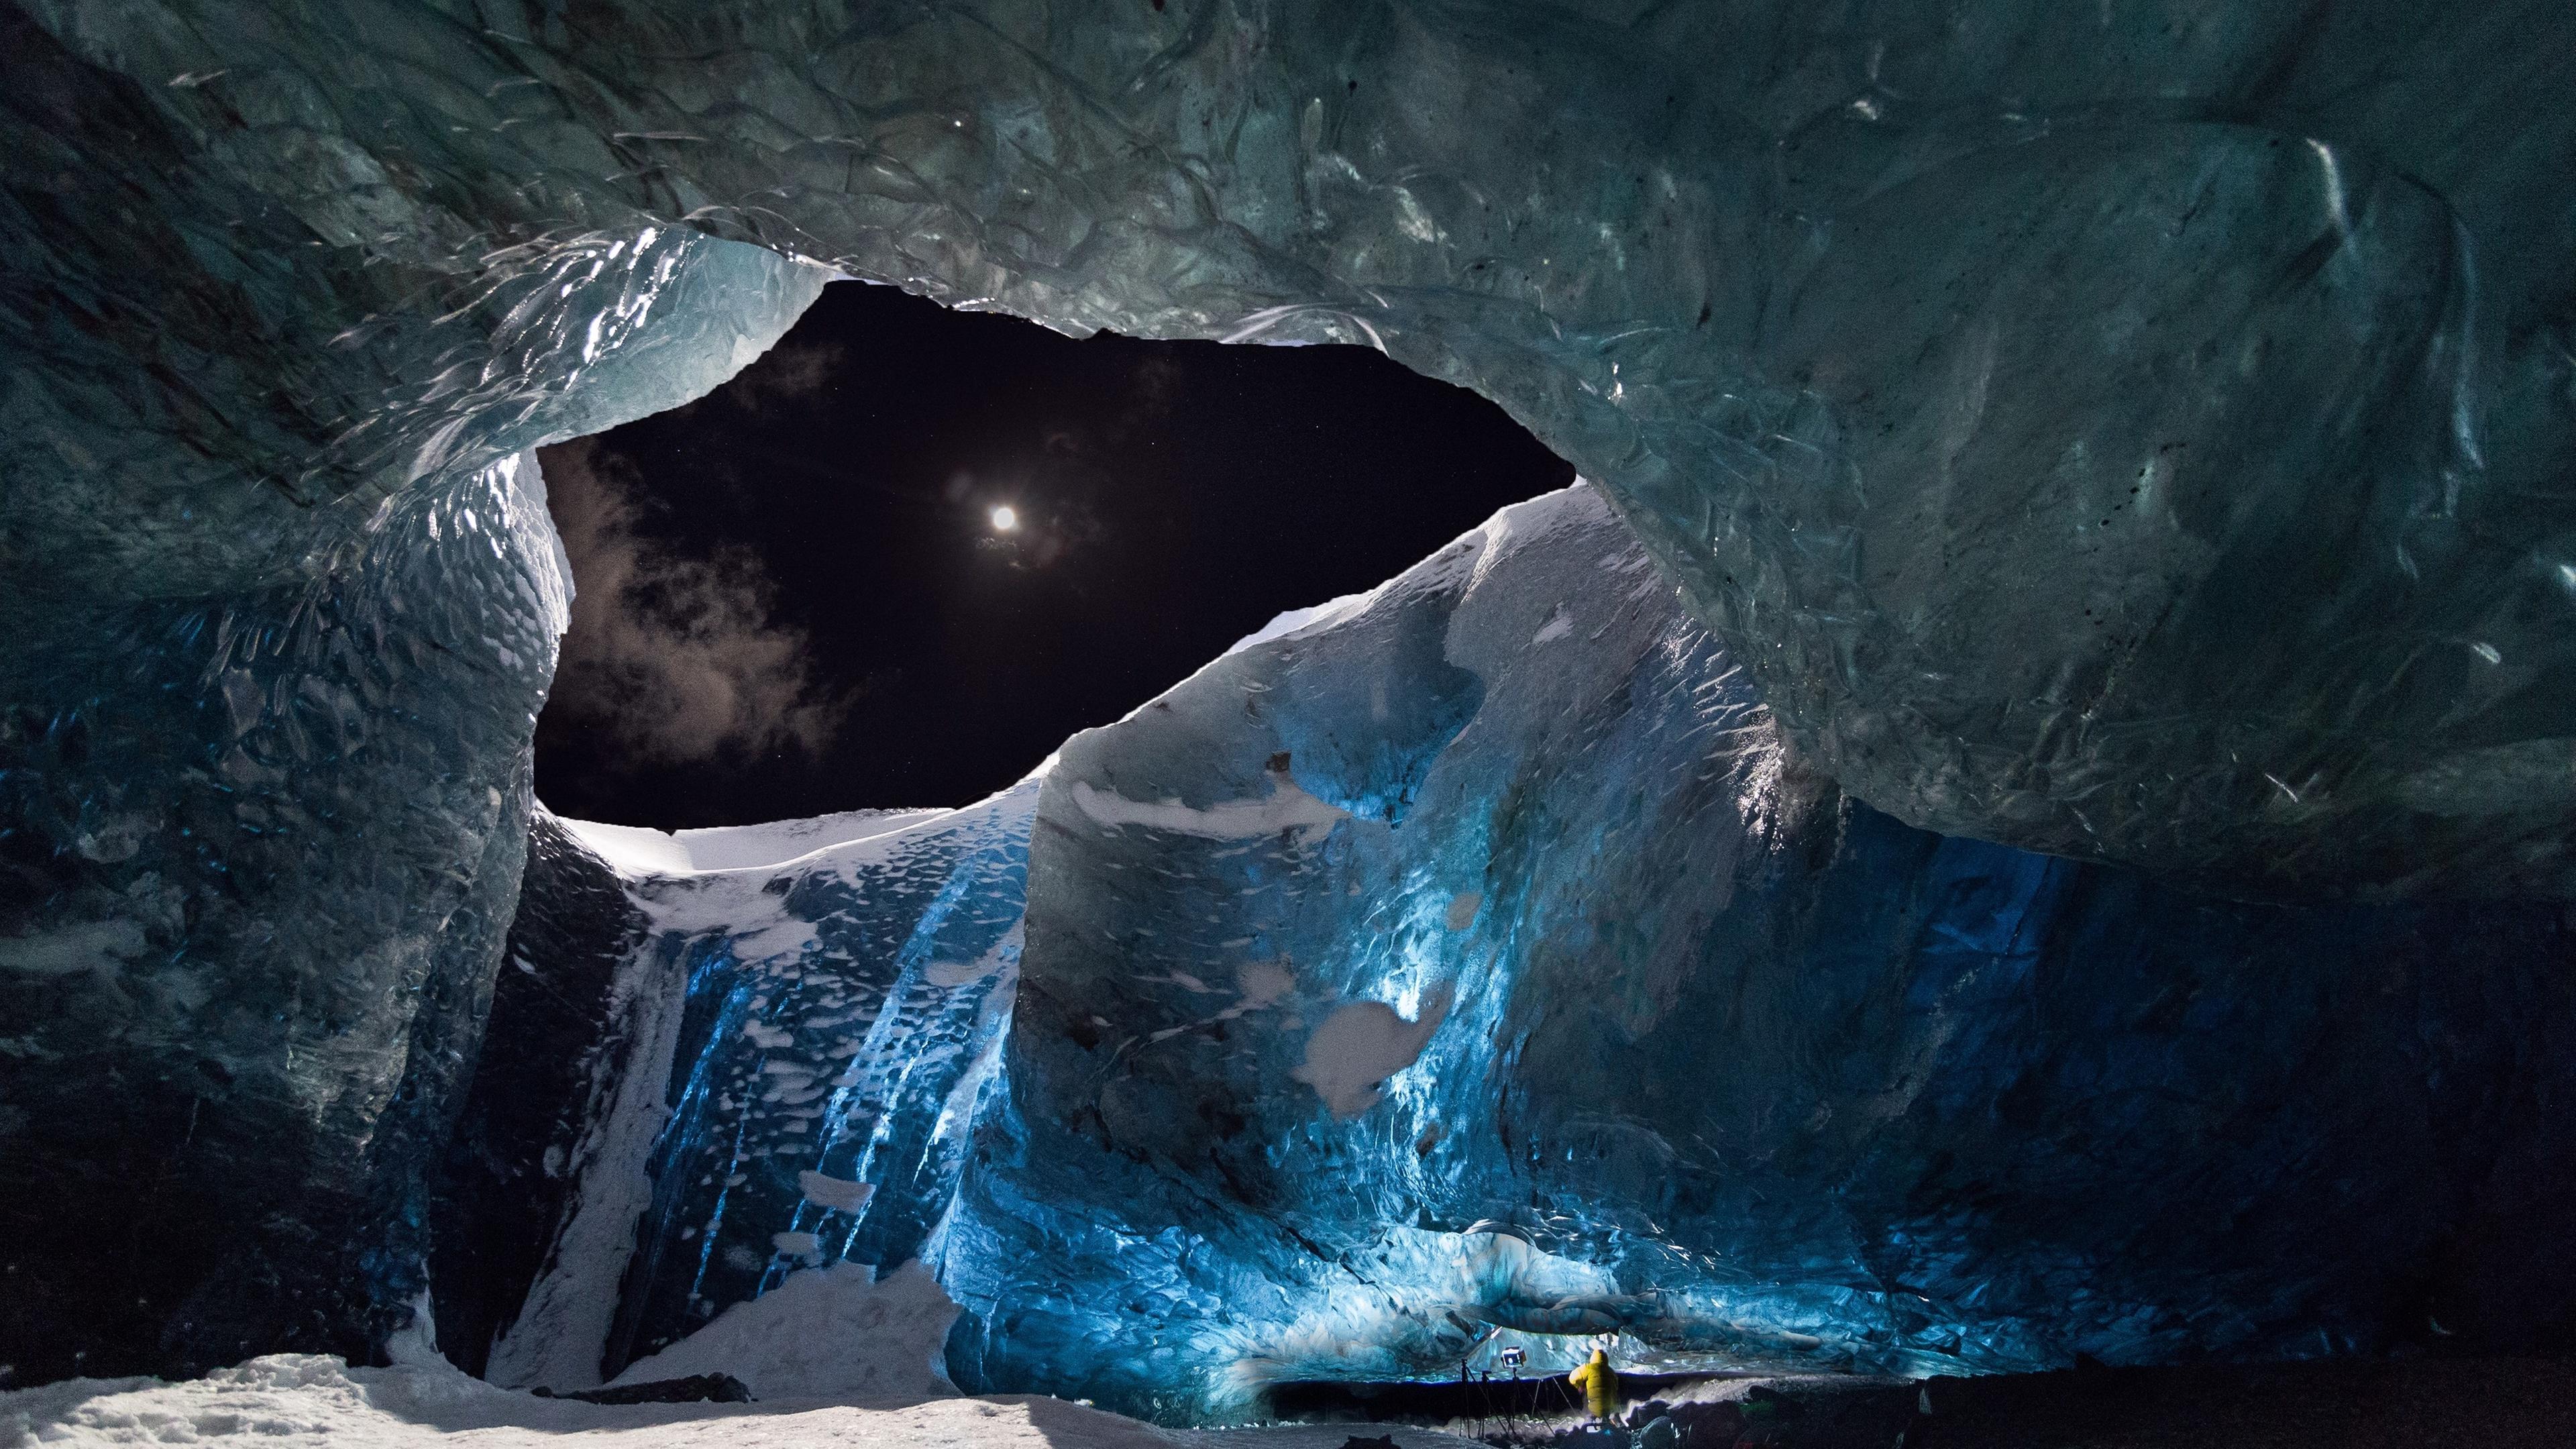 Bei Nacht bereitet sich ein Kamerateam unter einem meterdicken isländischen Gletscher auf die Dreharbeiten vor. Durch eine Öffnung im Gletscher ist am Nachthimmel der Mond zu sehen.